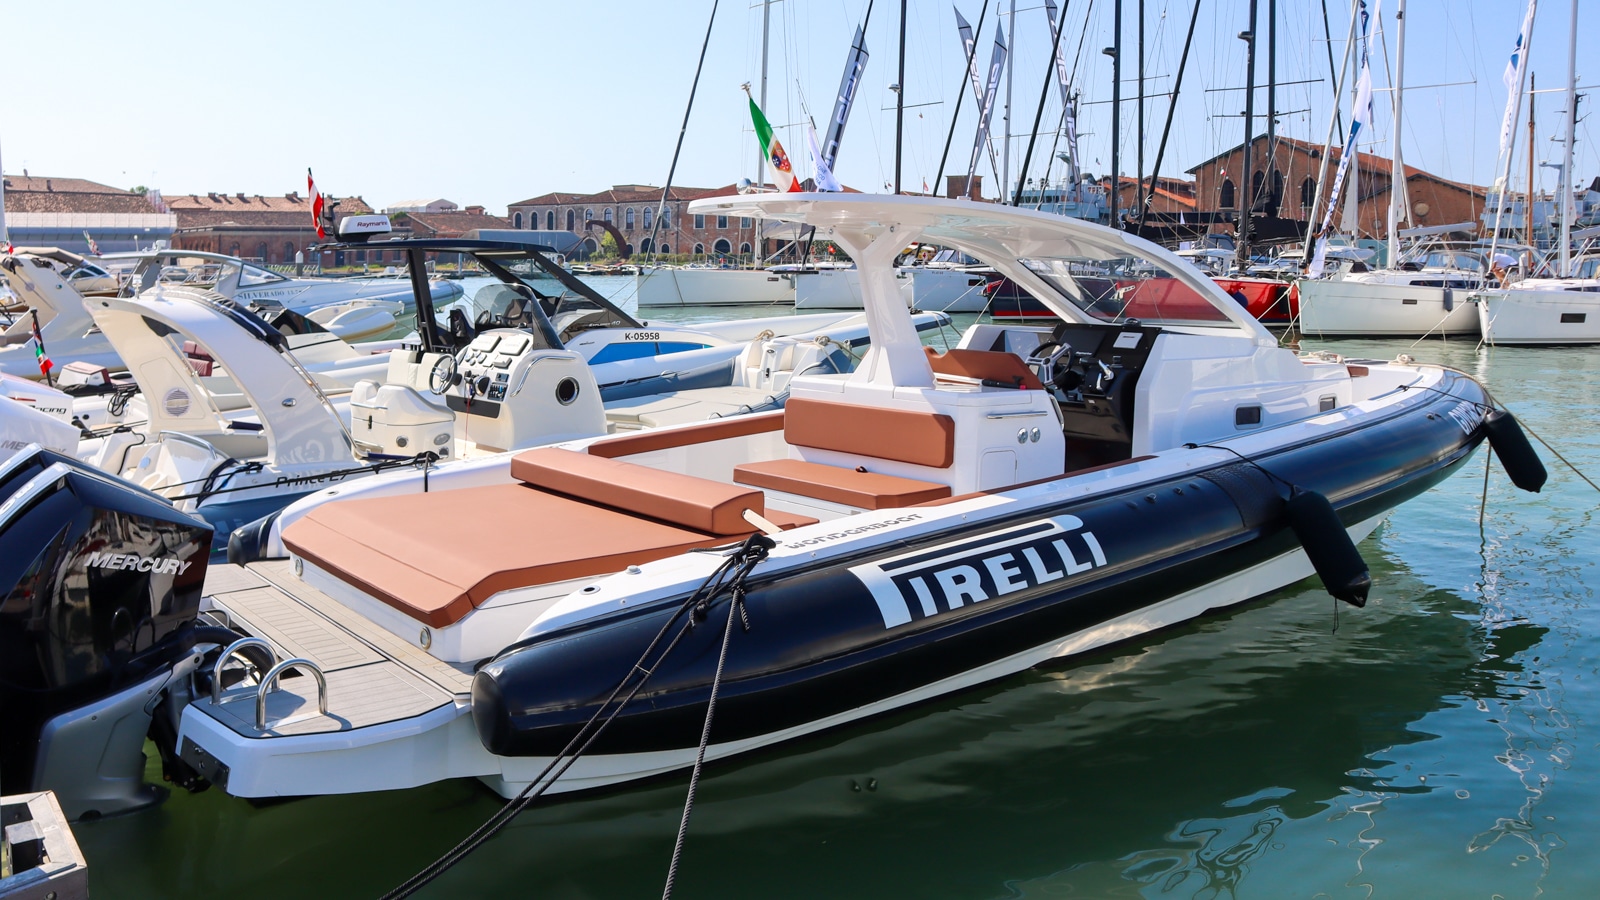 PIRELLI al Salone Nautico di Venezia con lo speedboat walkaround 35